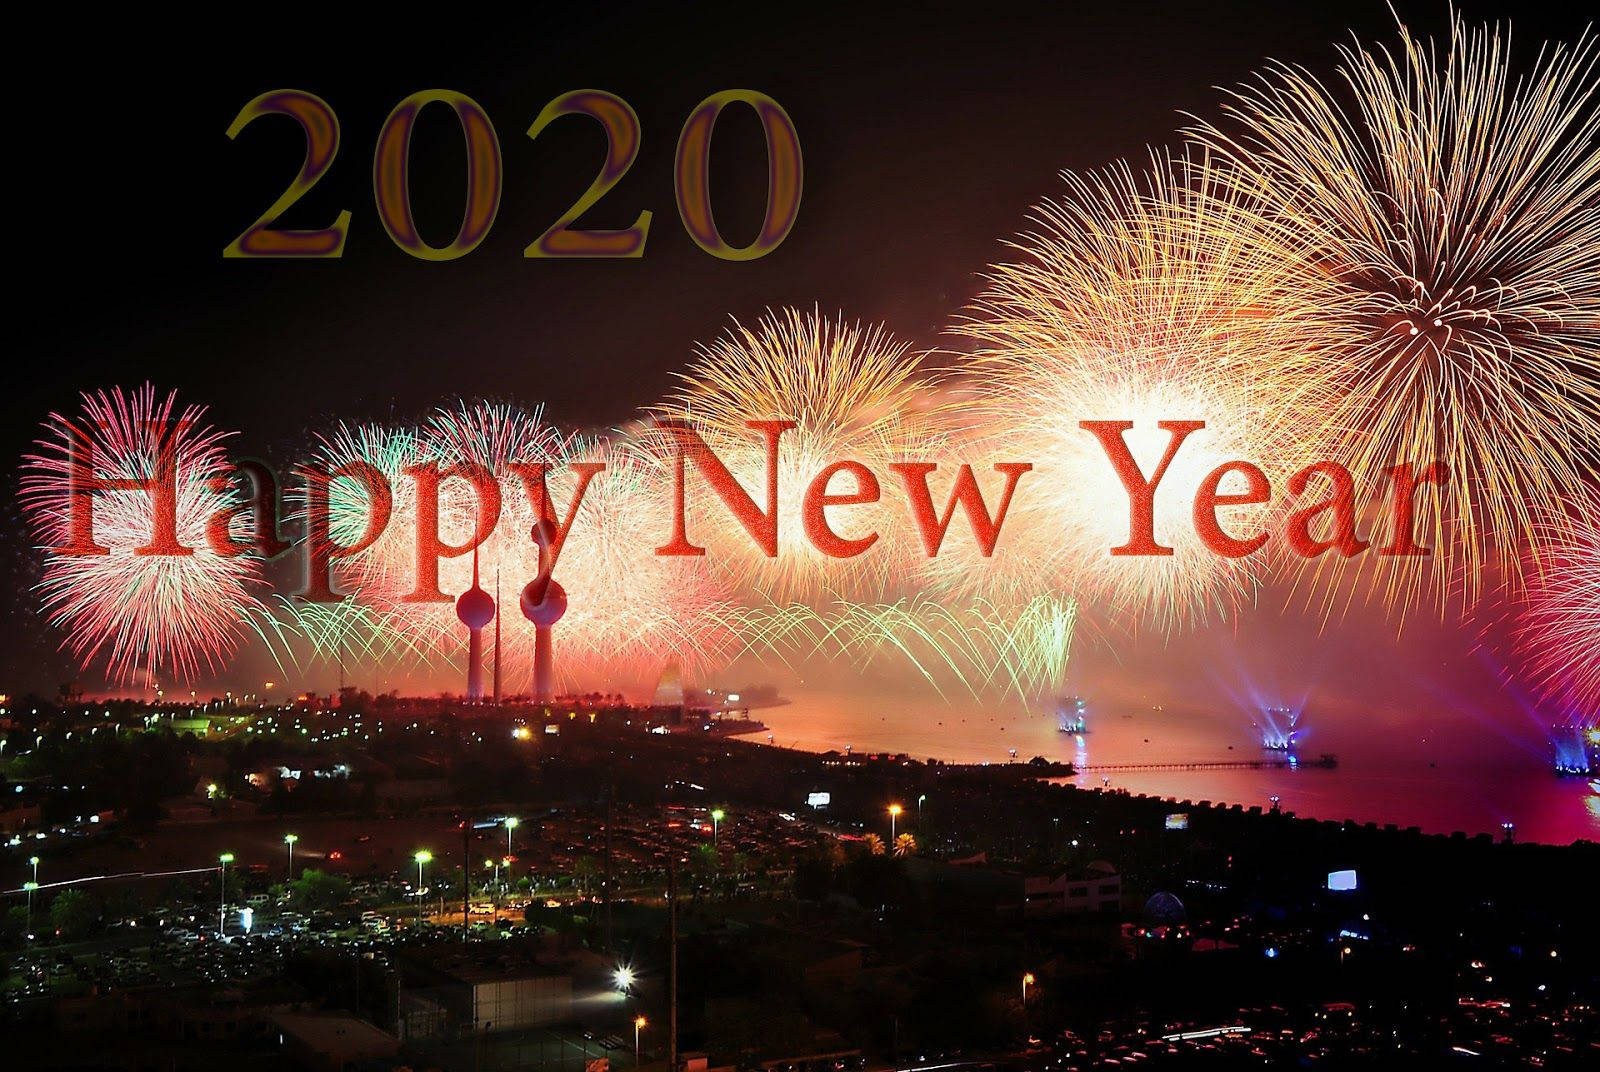 Felizaño Nuevo 2020 - Feliz Año Nuevo 2020 Imagen Deseos Fondo de pantalla